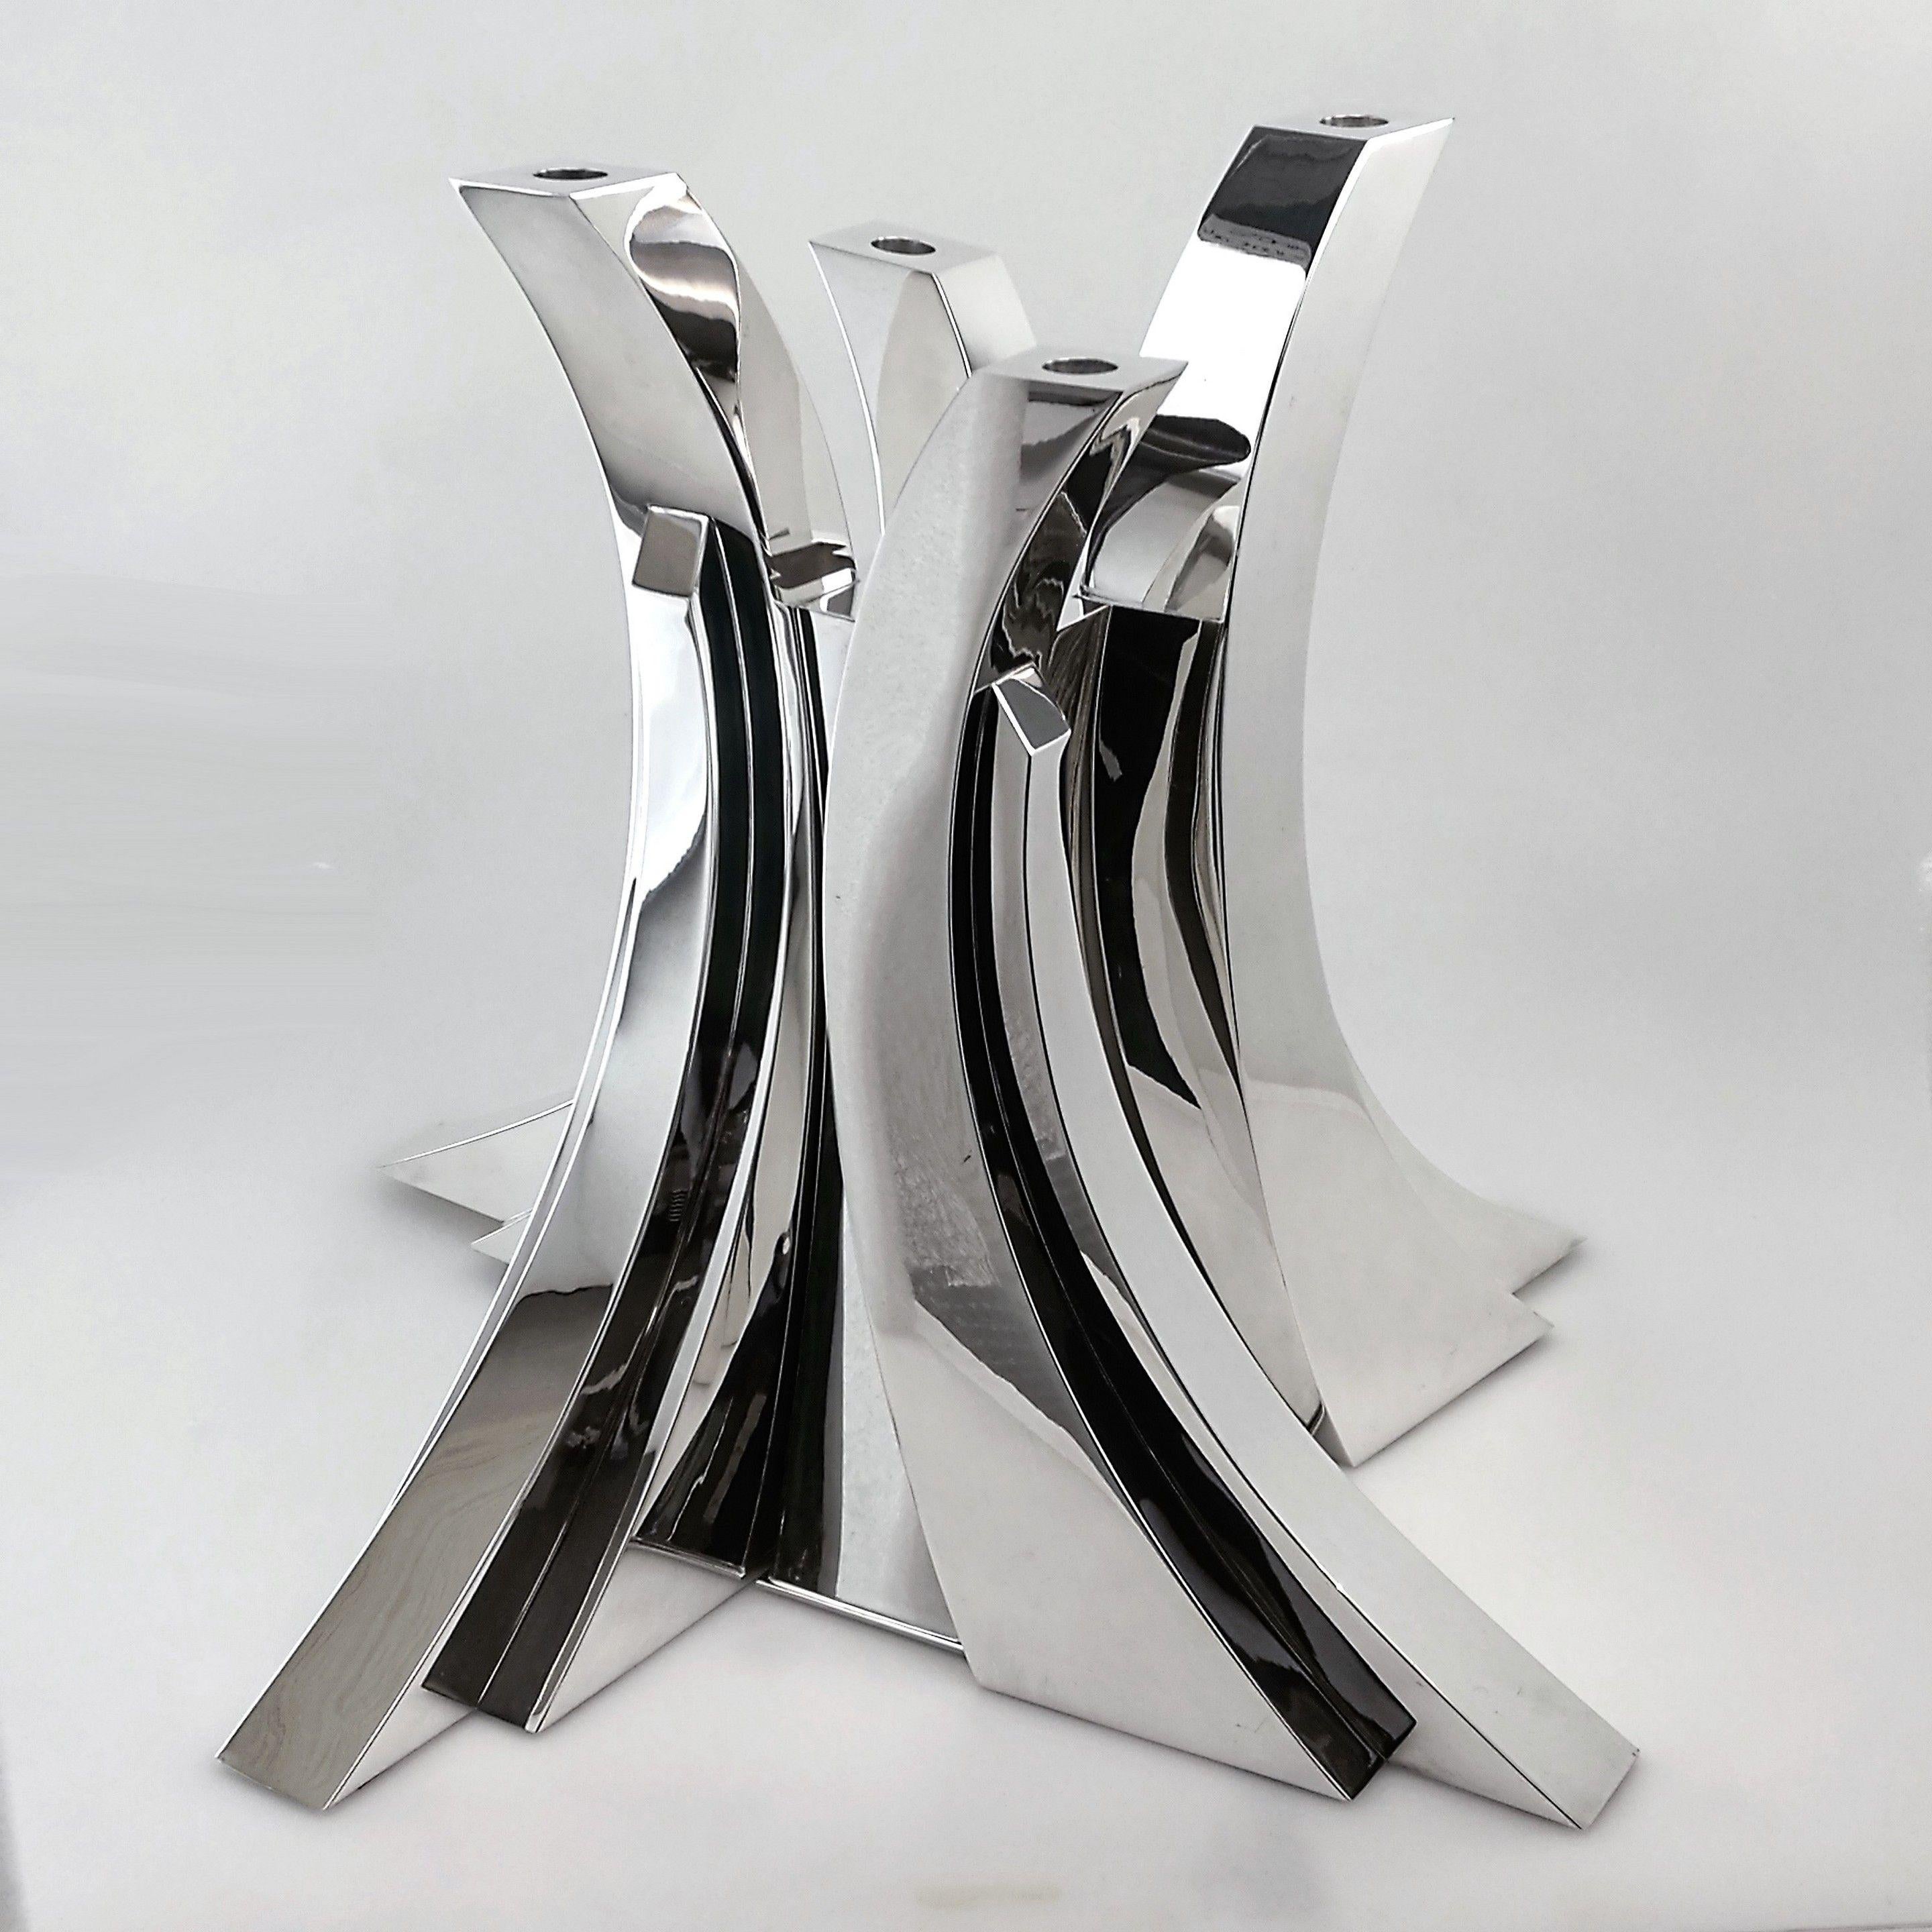 Ein spektakuläres modernistisches skulpturales Herzstück von Damian Garrido. Dieser prächtige Tafelaufsatz besteht aus vier prächtigen geschwungenen Kerzenhaltern, die in eine zentrale Vase passen. Jedes dieser Teile kann allein oder in einer